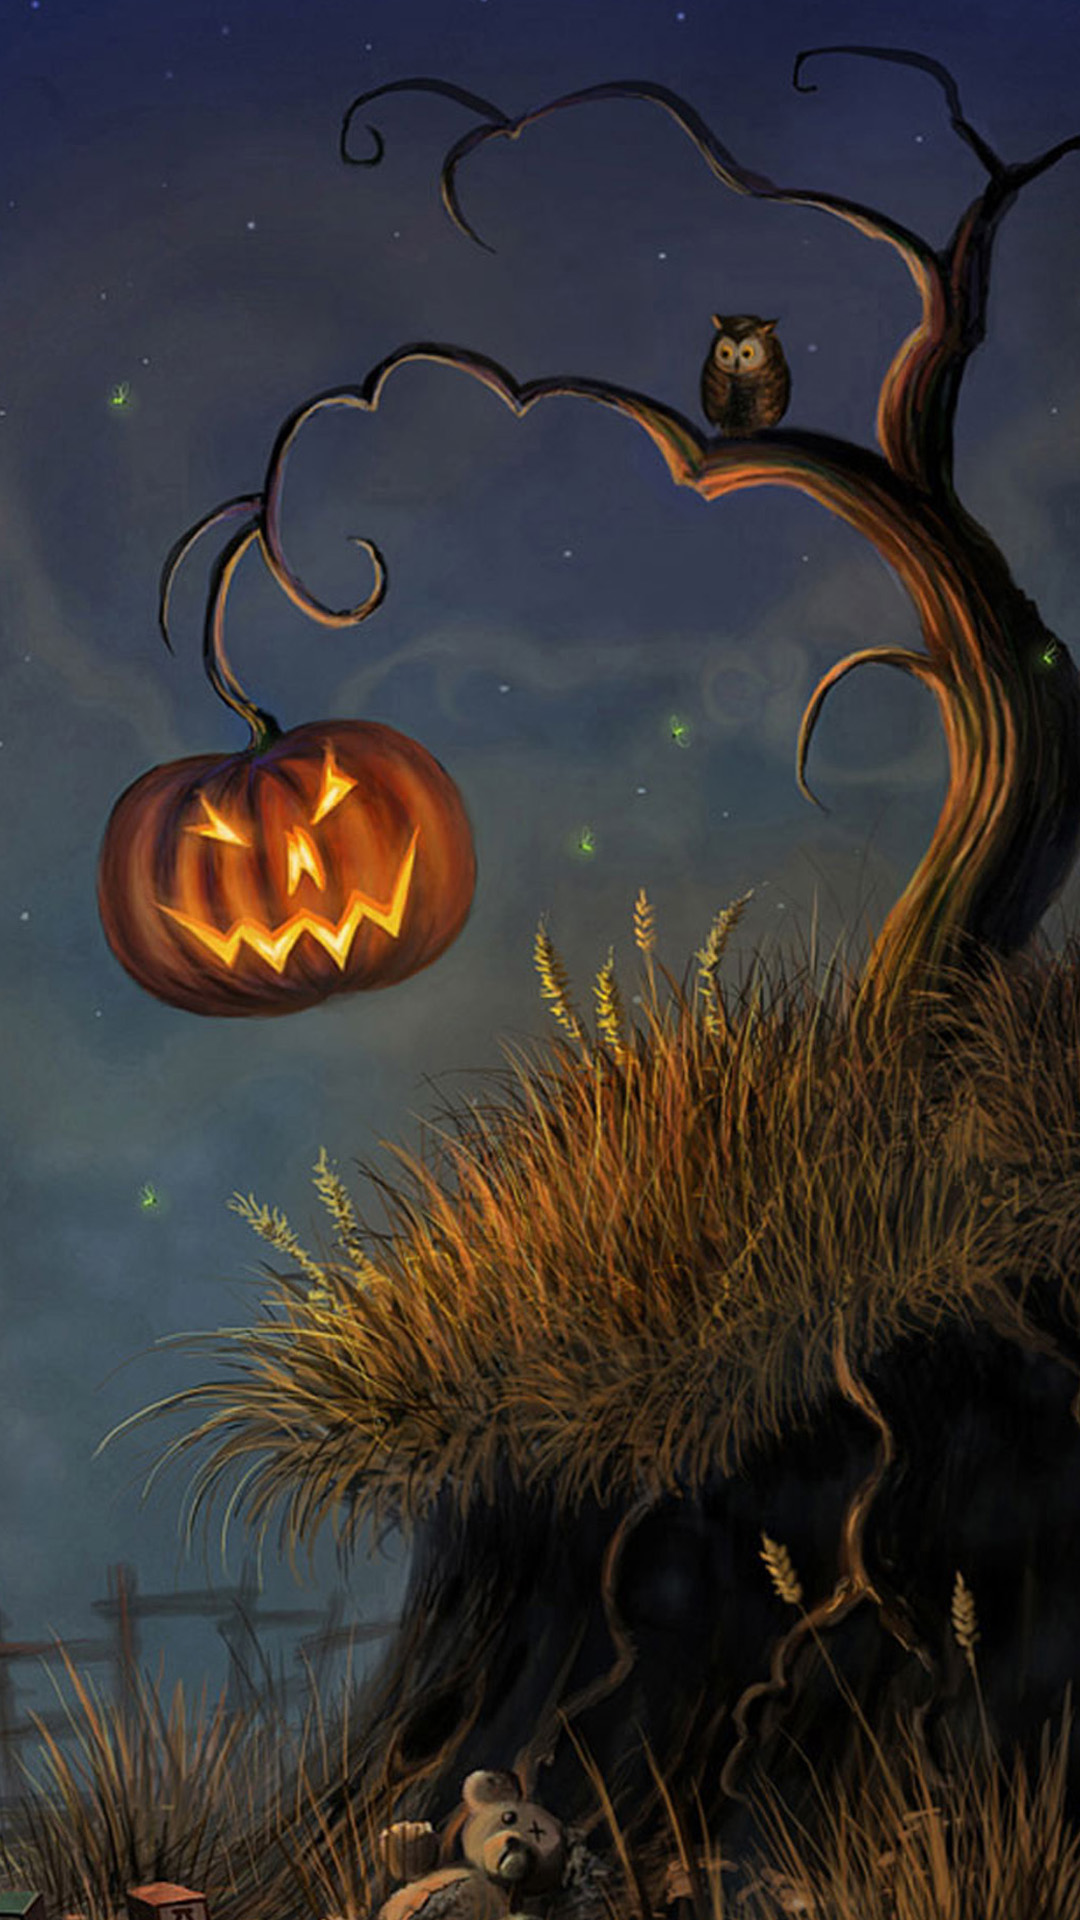 Unduh 97 + Halloween Art Iphone Wallpaper Foto Populer Terbaik - Posts.id